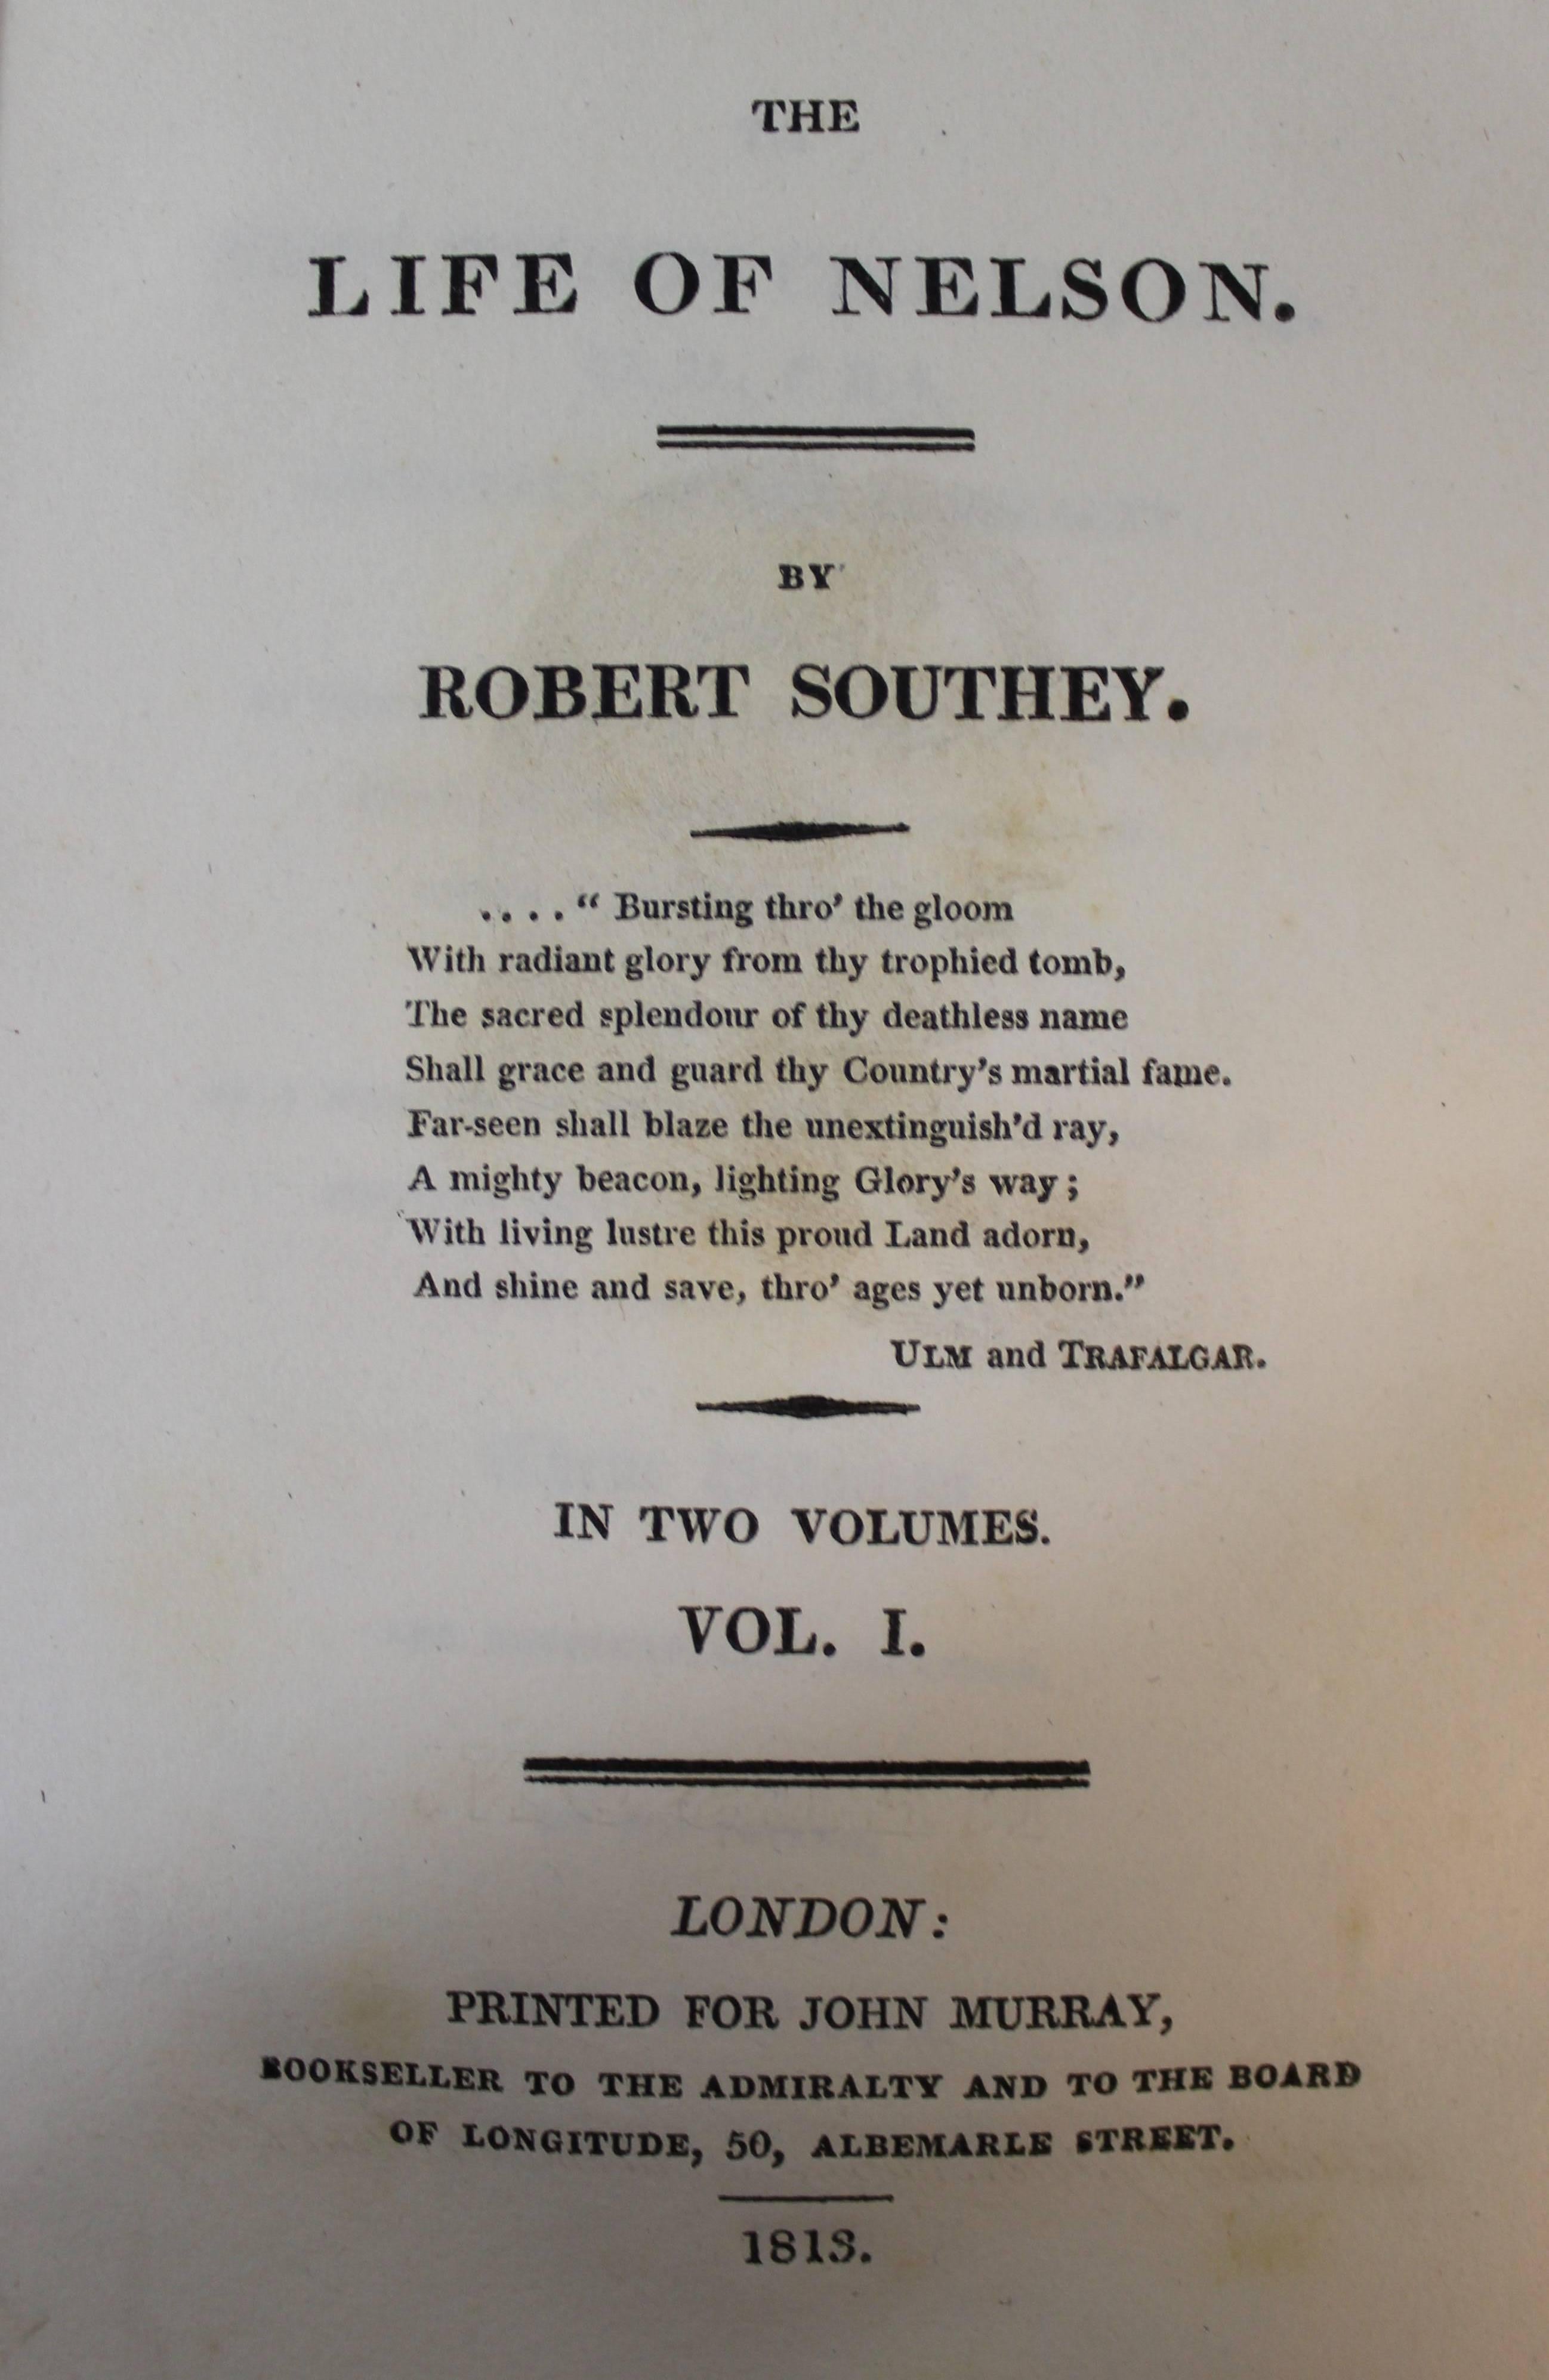 Livres « The Life of Nelson » (La vie de Nelson) de Robert Southey, première édition en vente 2